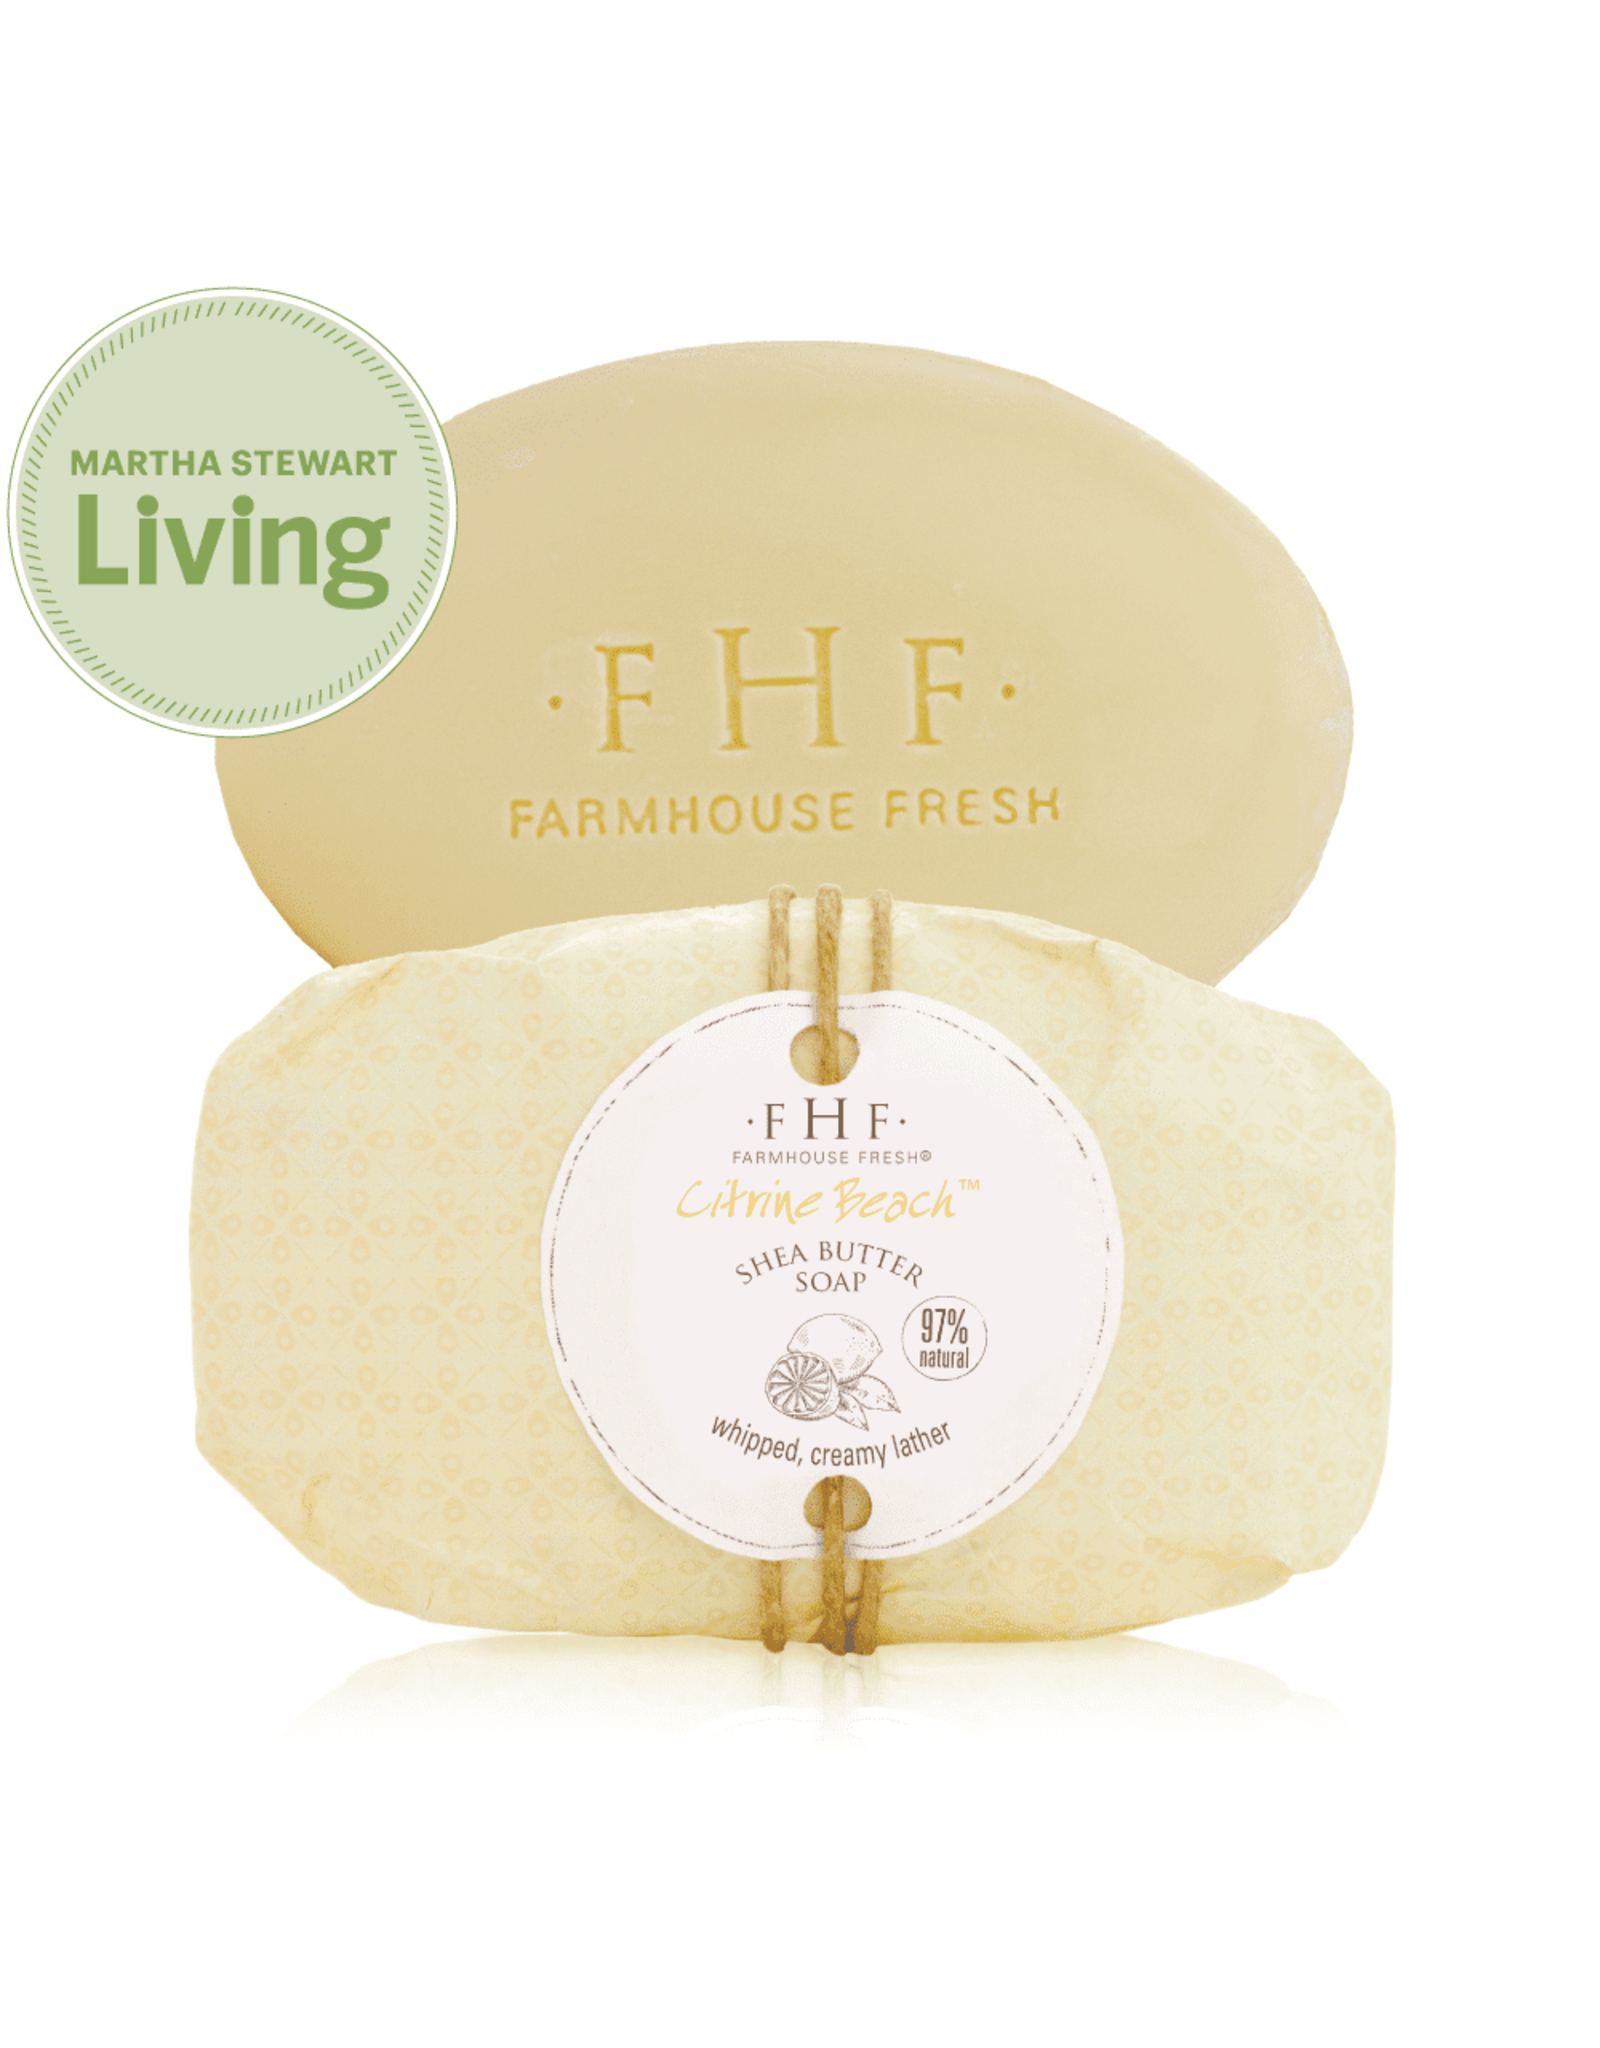 Farmhouse Fresh Citrine Beach® Shea Butter Bar Soap 5.25oz